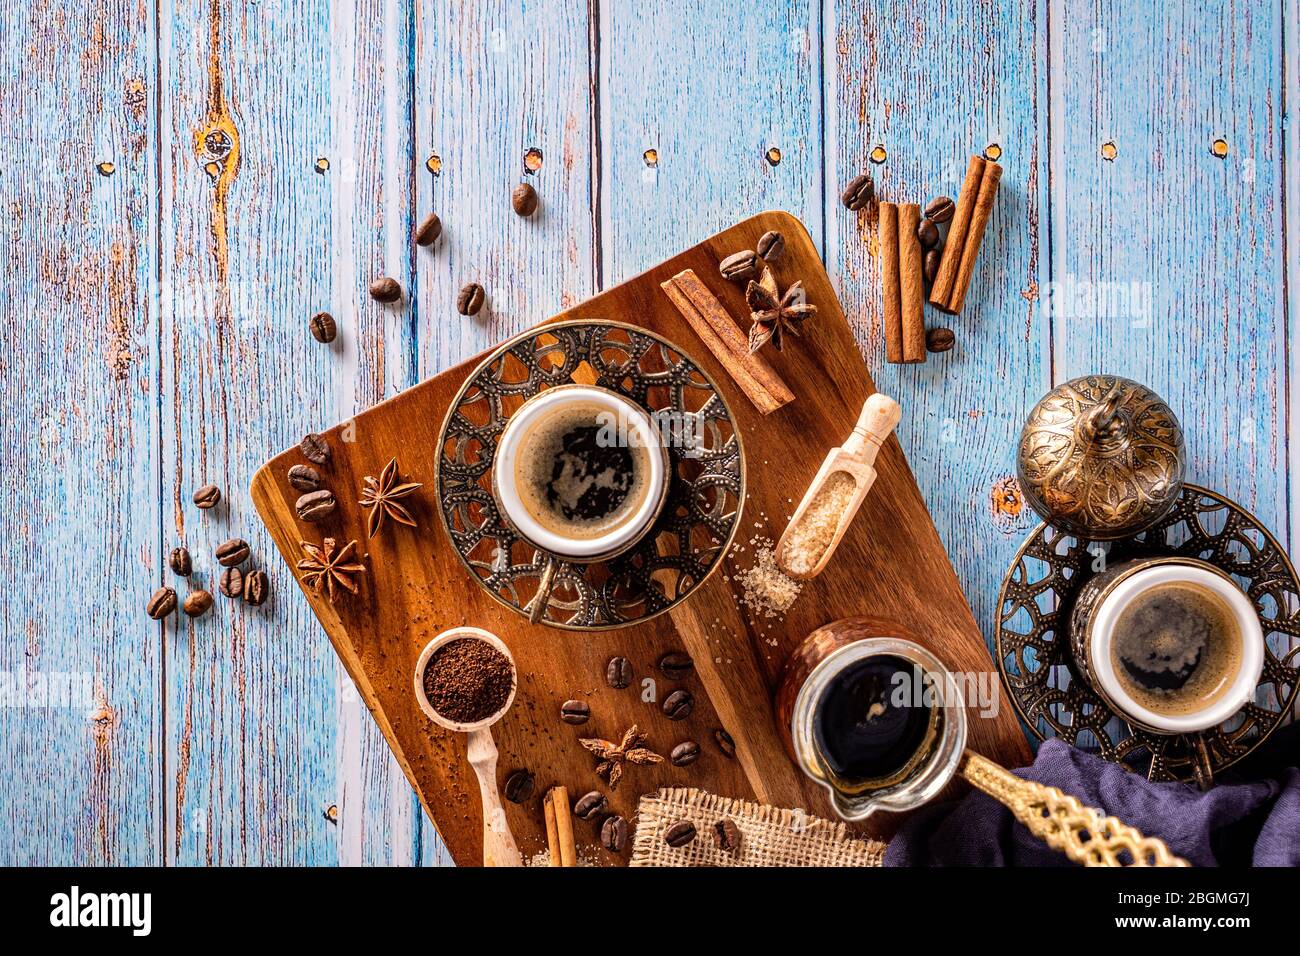 Tazas de café con granos de café y cafetera. Café de estilo vintage sobre el fondo de madera antigua Foto de stock